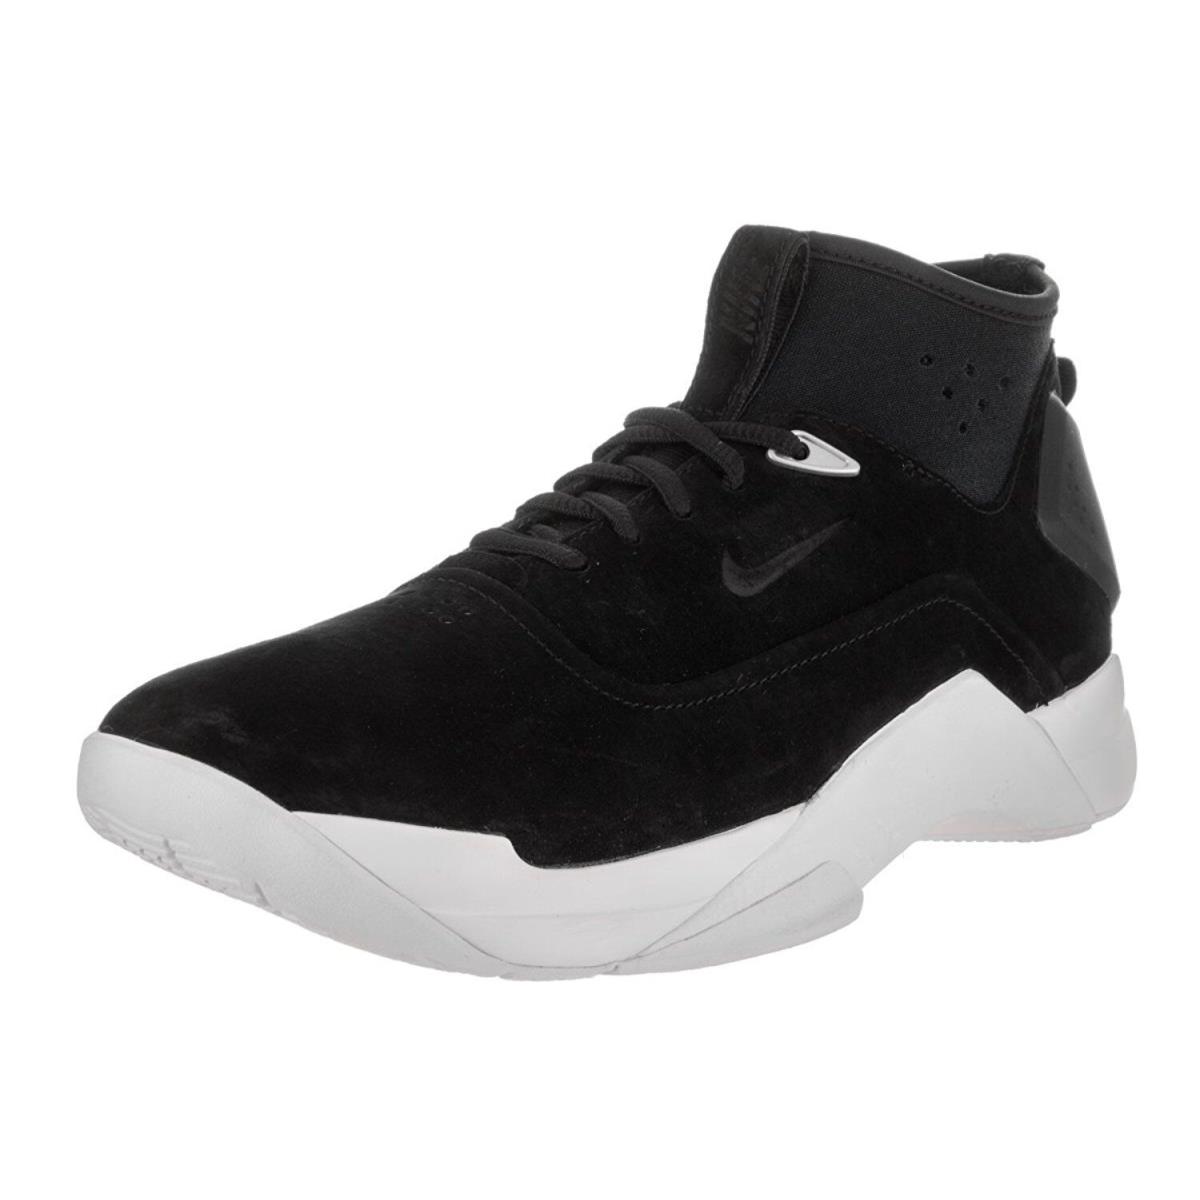 Nike Men`s sz Size 7 Hyperdunk Low Lux Basketball Shoe Black White 864022 001 - Black